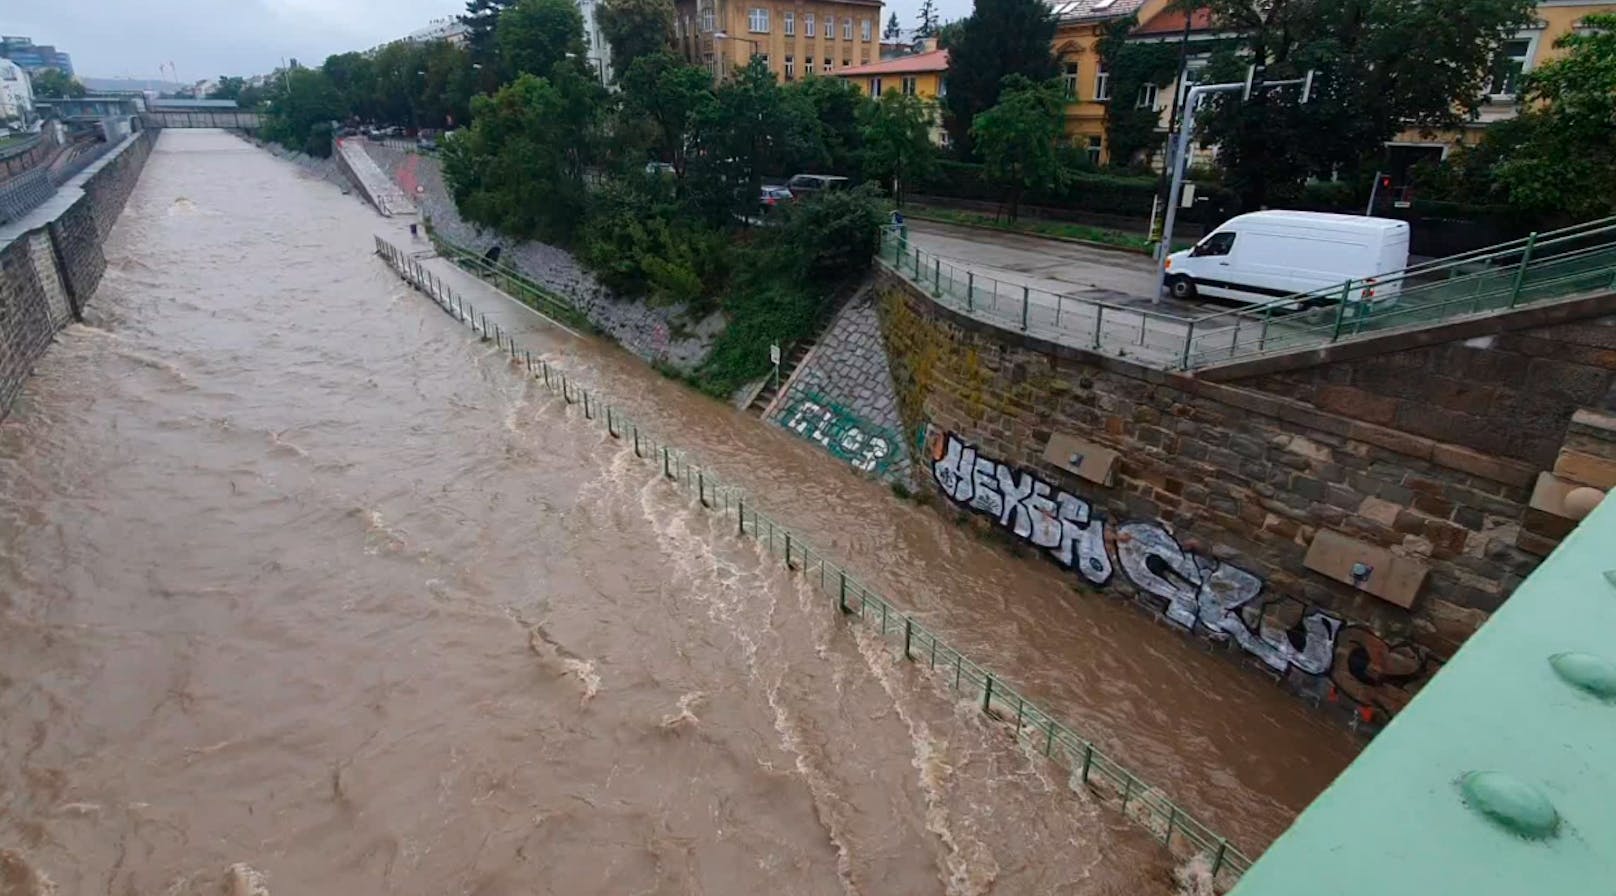 Überflutet – Wiental-Radweg bleibt ganze Woche gesperrt